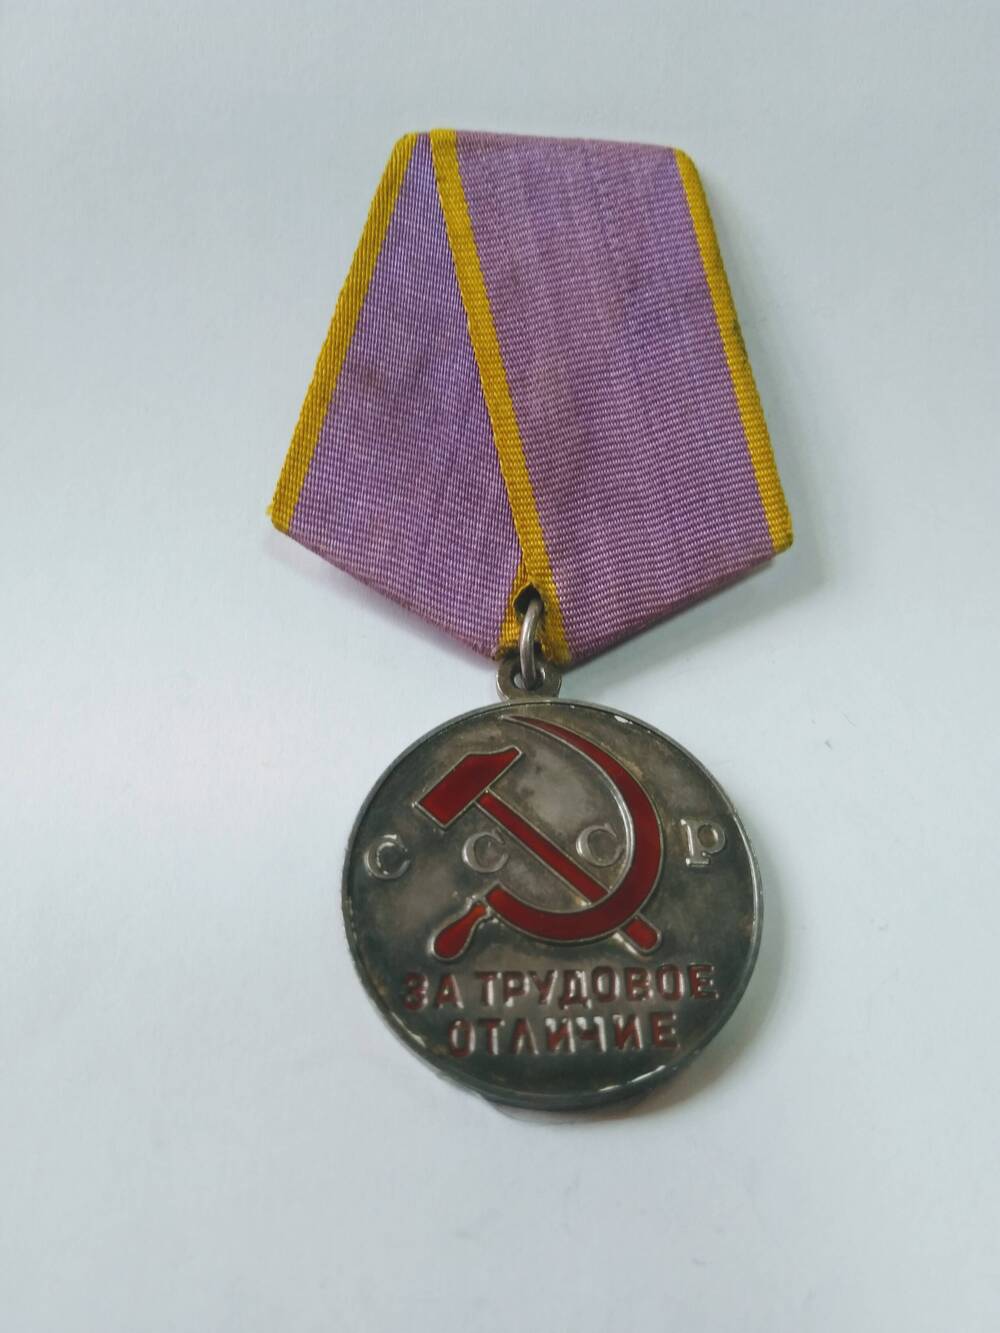 Медаль За трудовое отличие  - награда СССР, учрежденная в конце 1938 года.